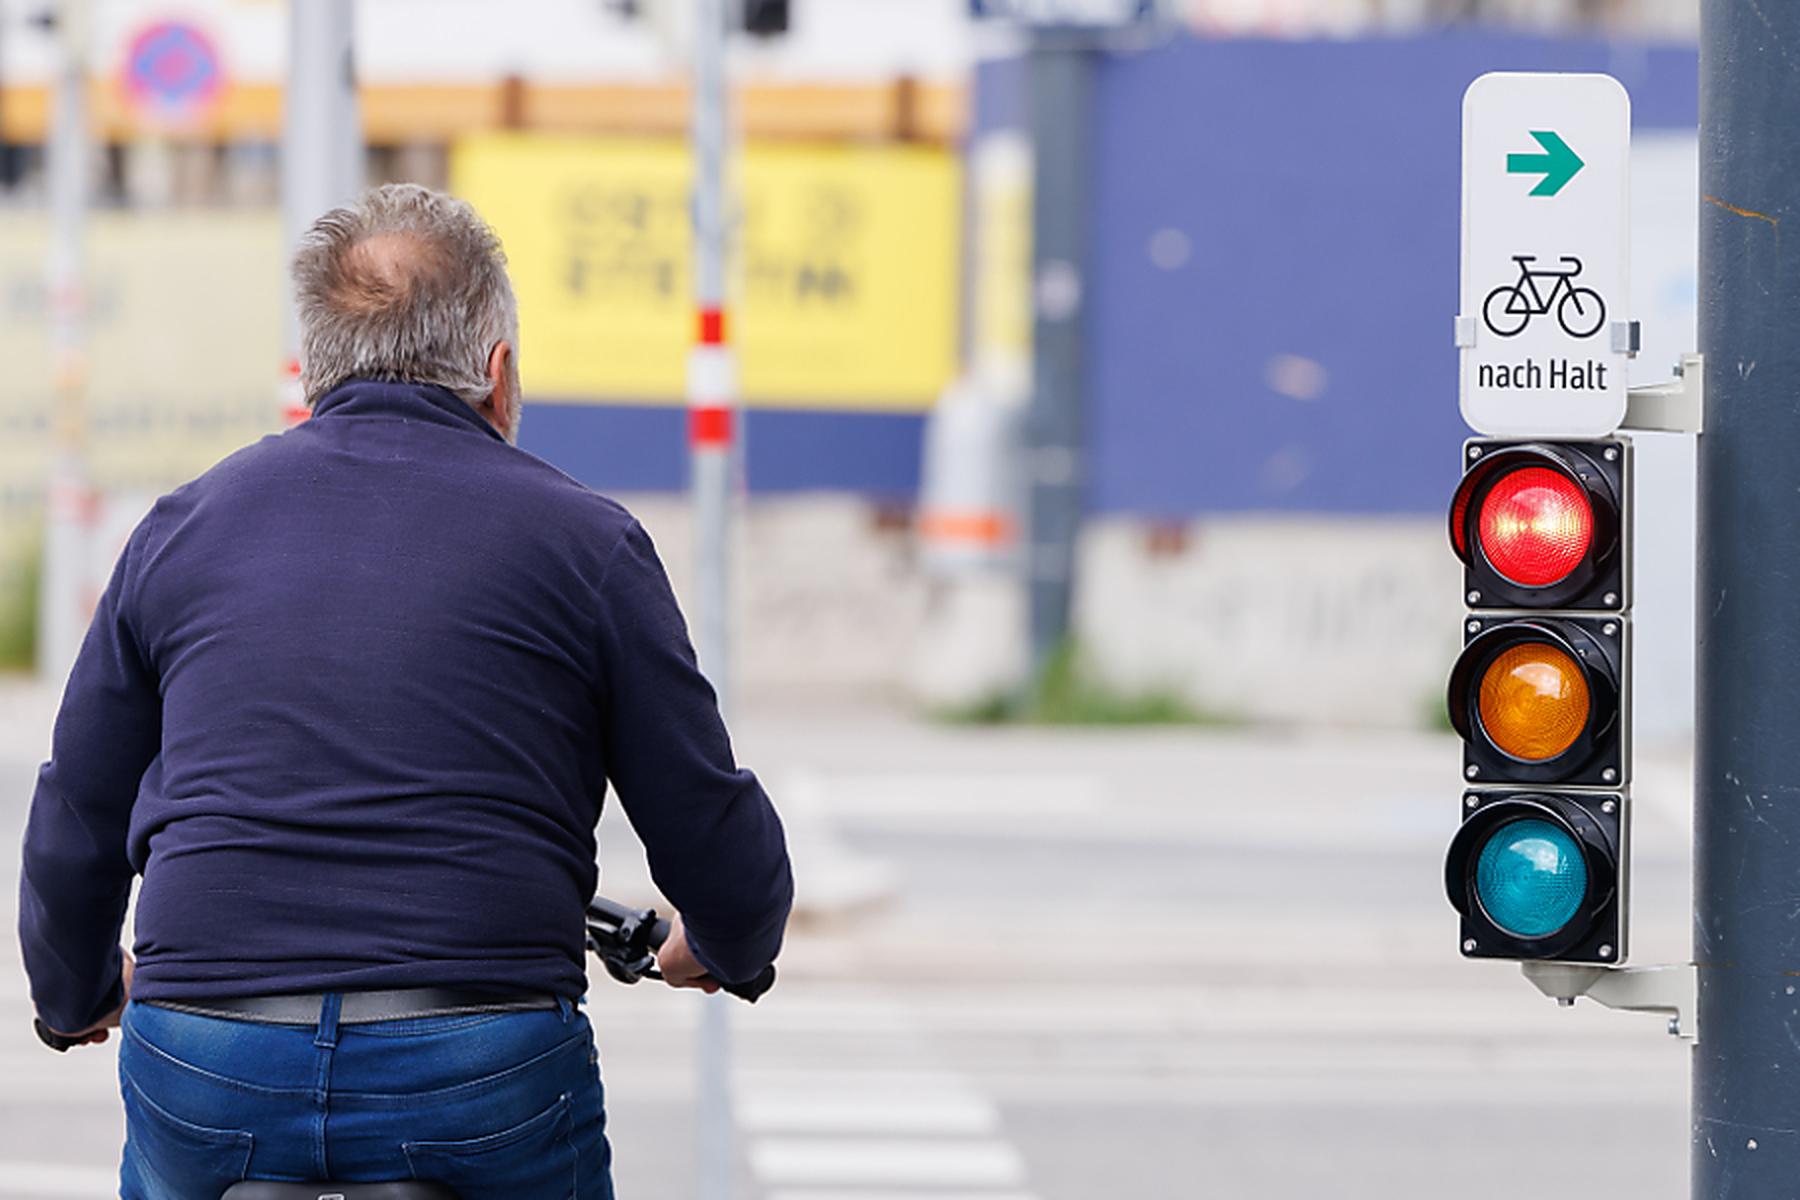 Wien: Immer mehr Radfahrer in Wien